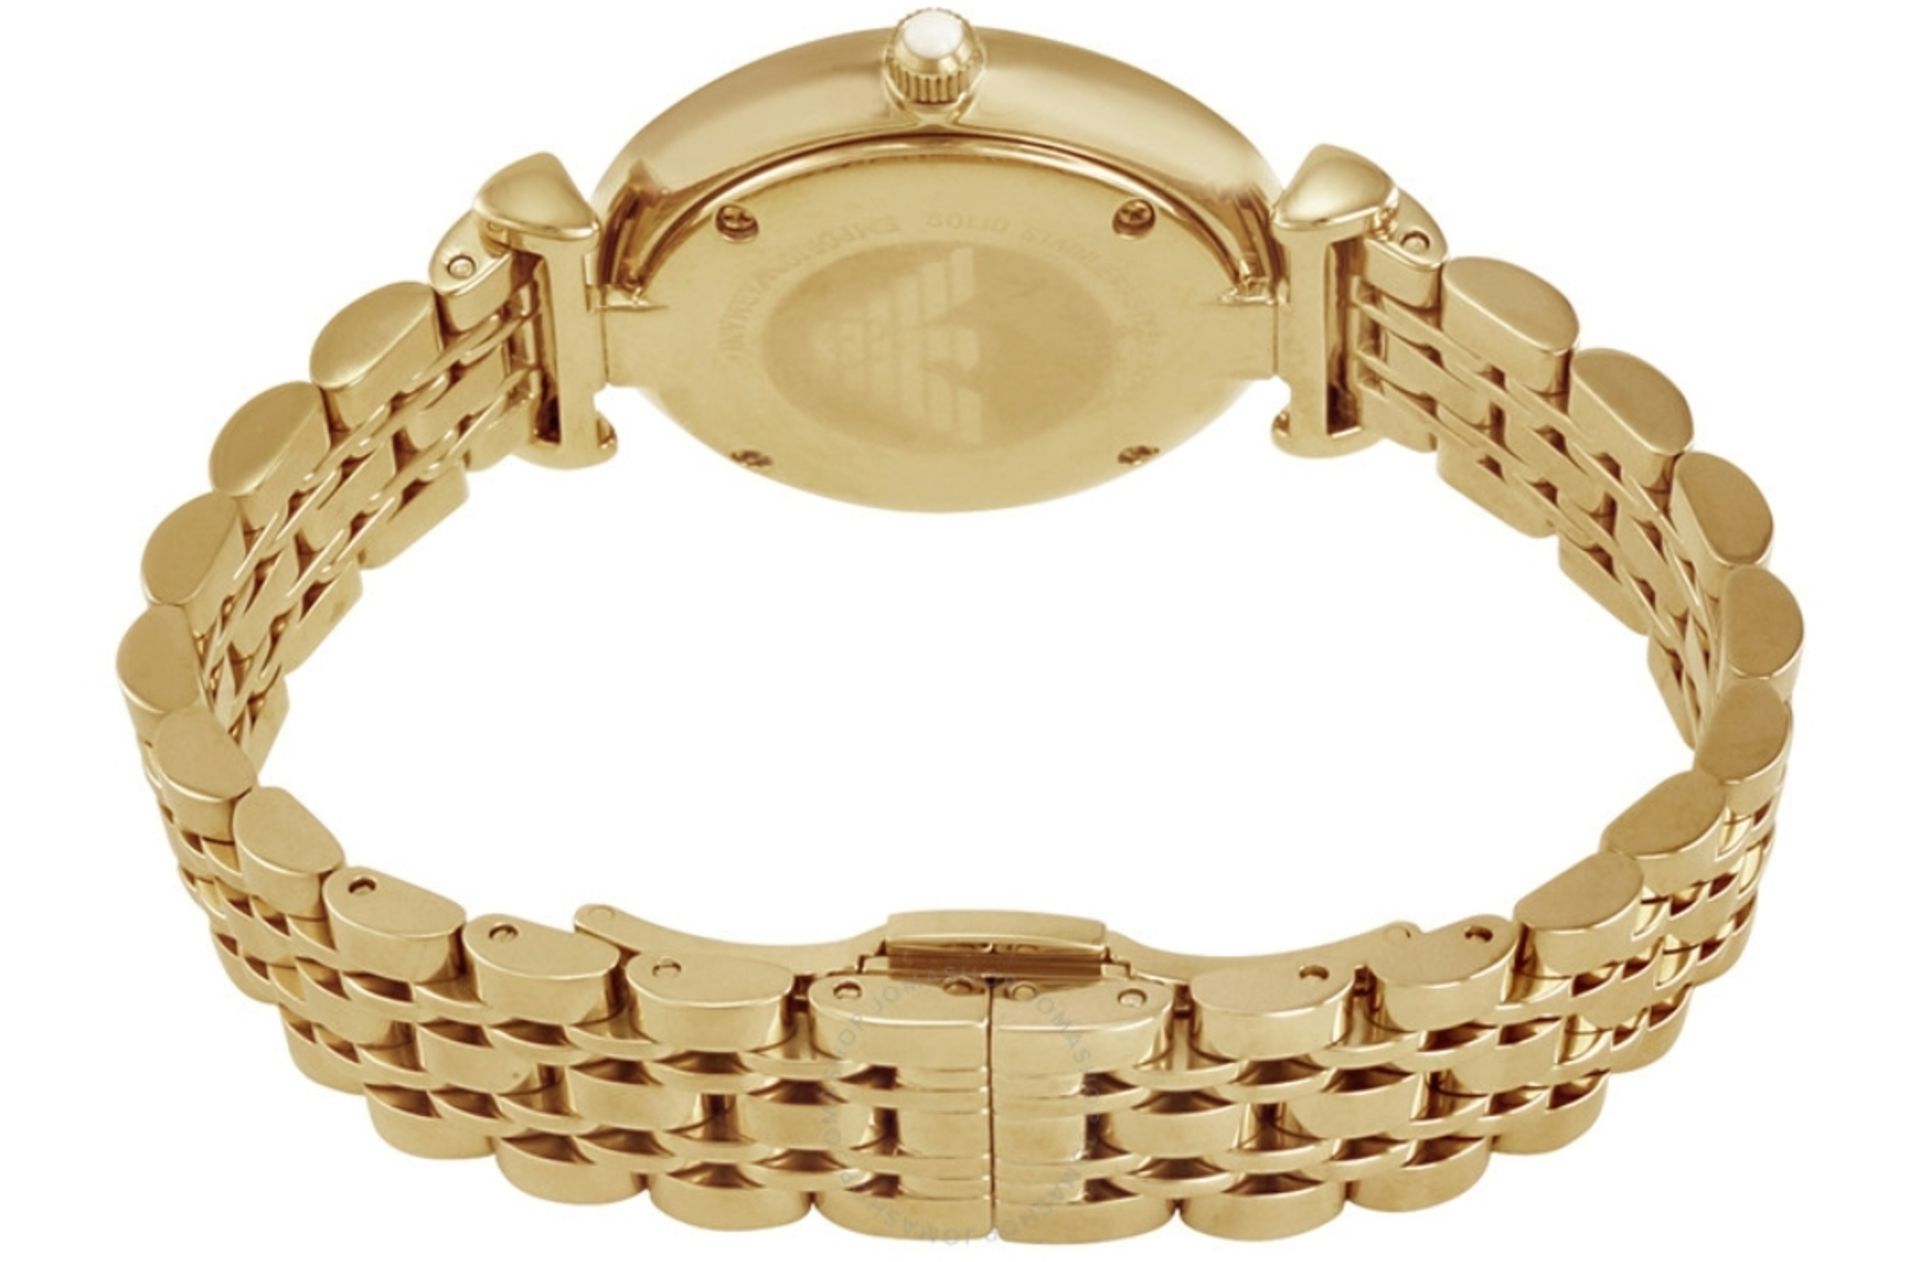 Emporio Armani AR1877 Ladies Gianni T-Bar Gold Tone Bracelet Designer Quartz Watch - Image 7 of 8